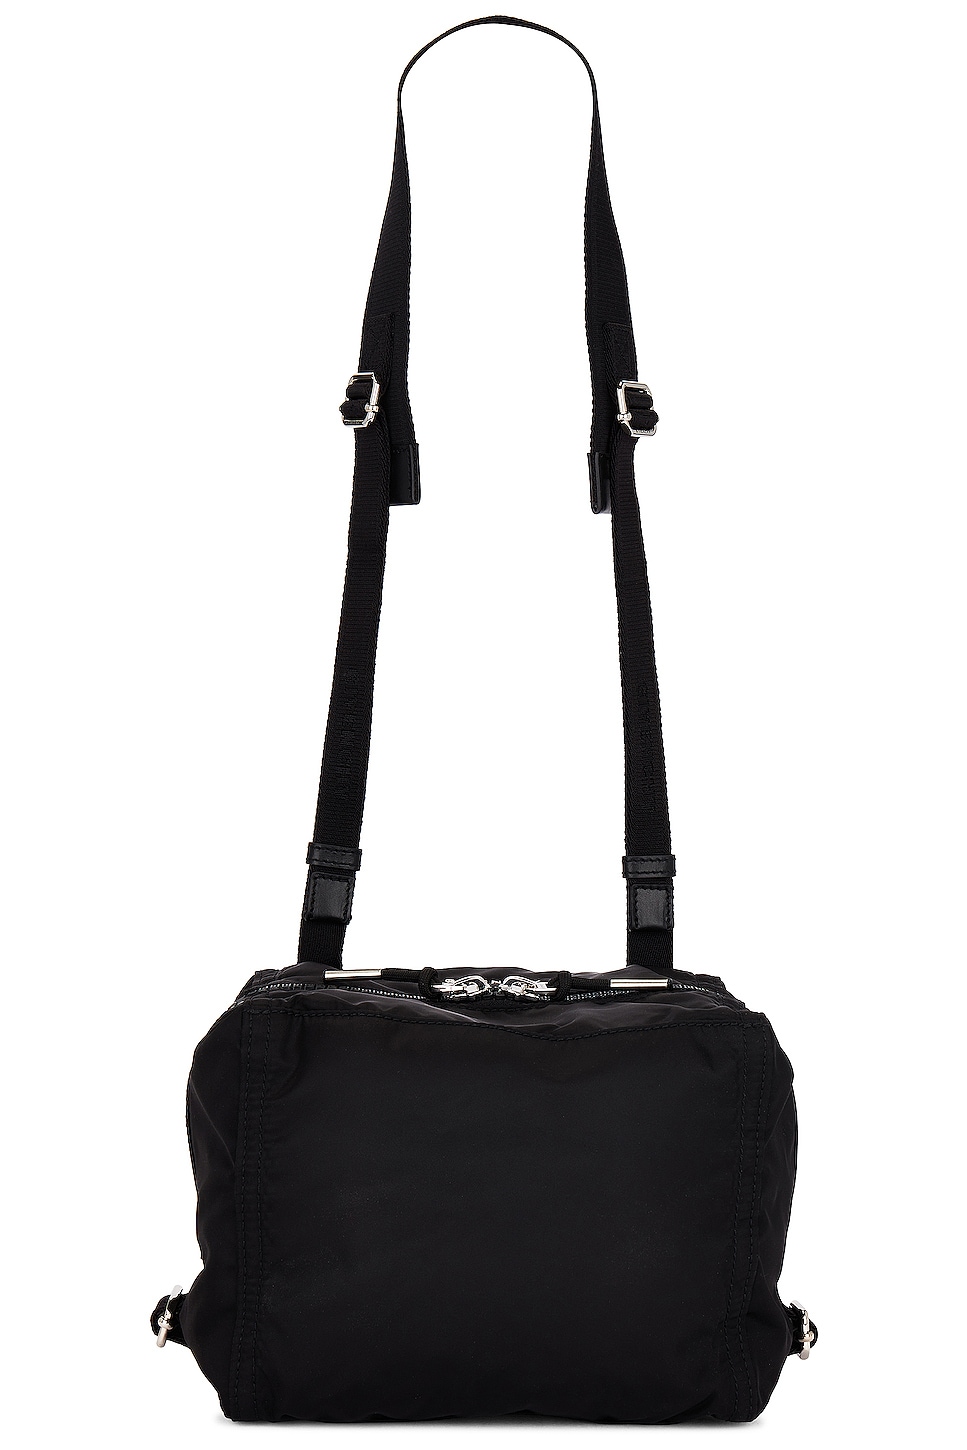 Givenchy Pandora Small Bag in Black